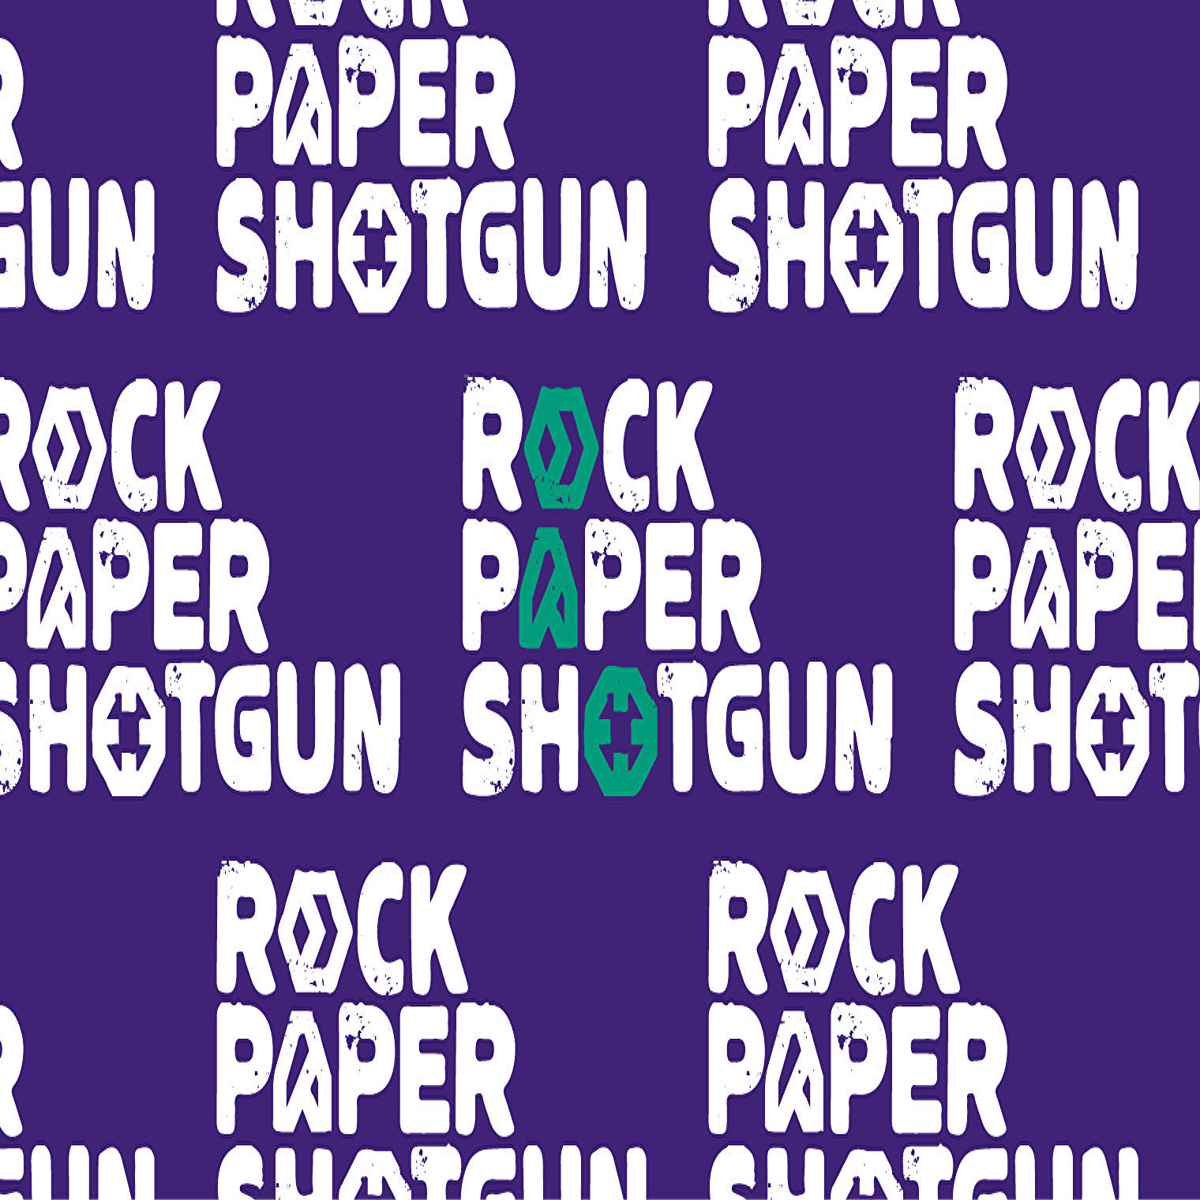 s-s-s-shark!  Rock Paper Shotgun